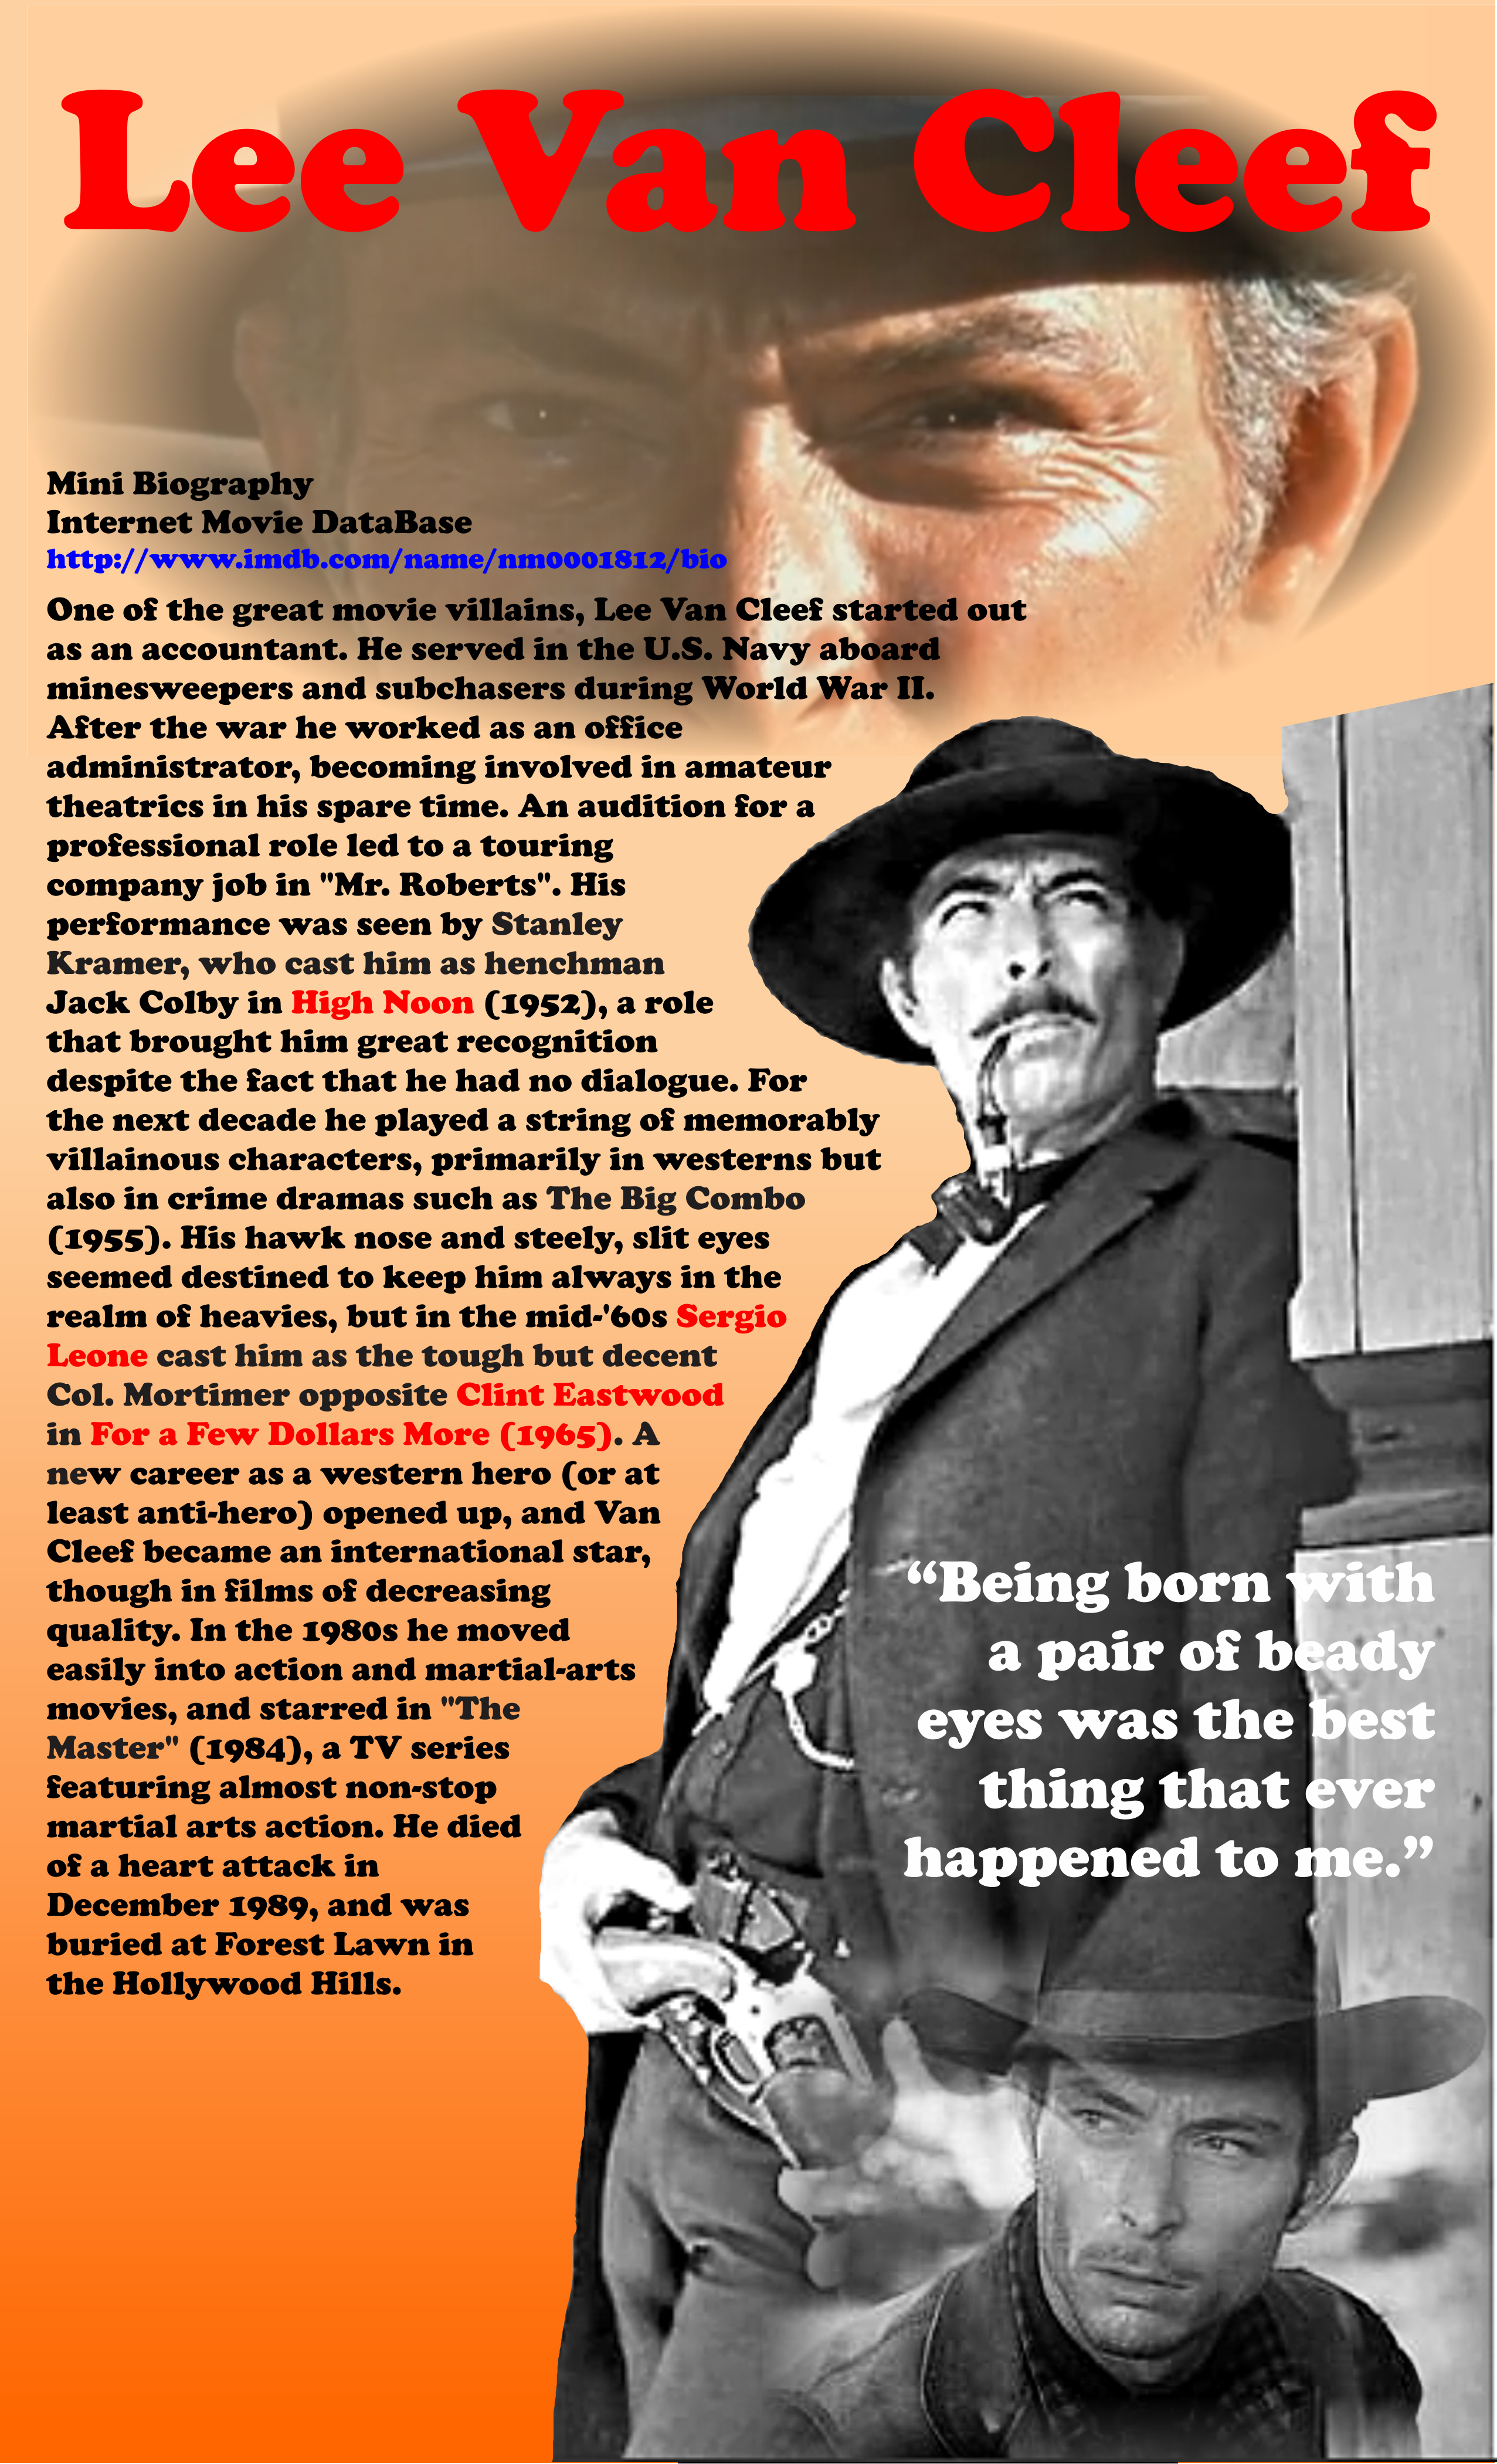 Lee Van Cleef – Cowboy Hall of Fame – My Favorite Westerns